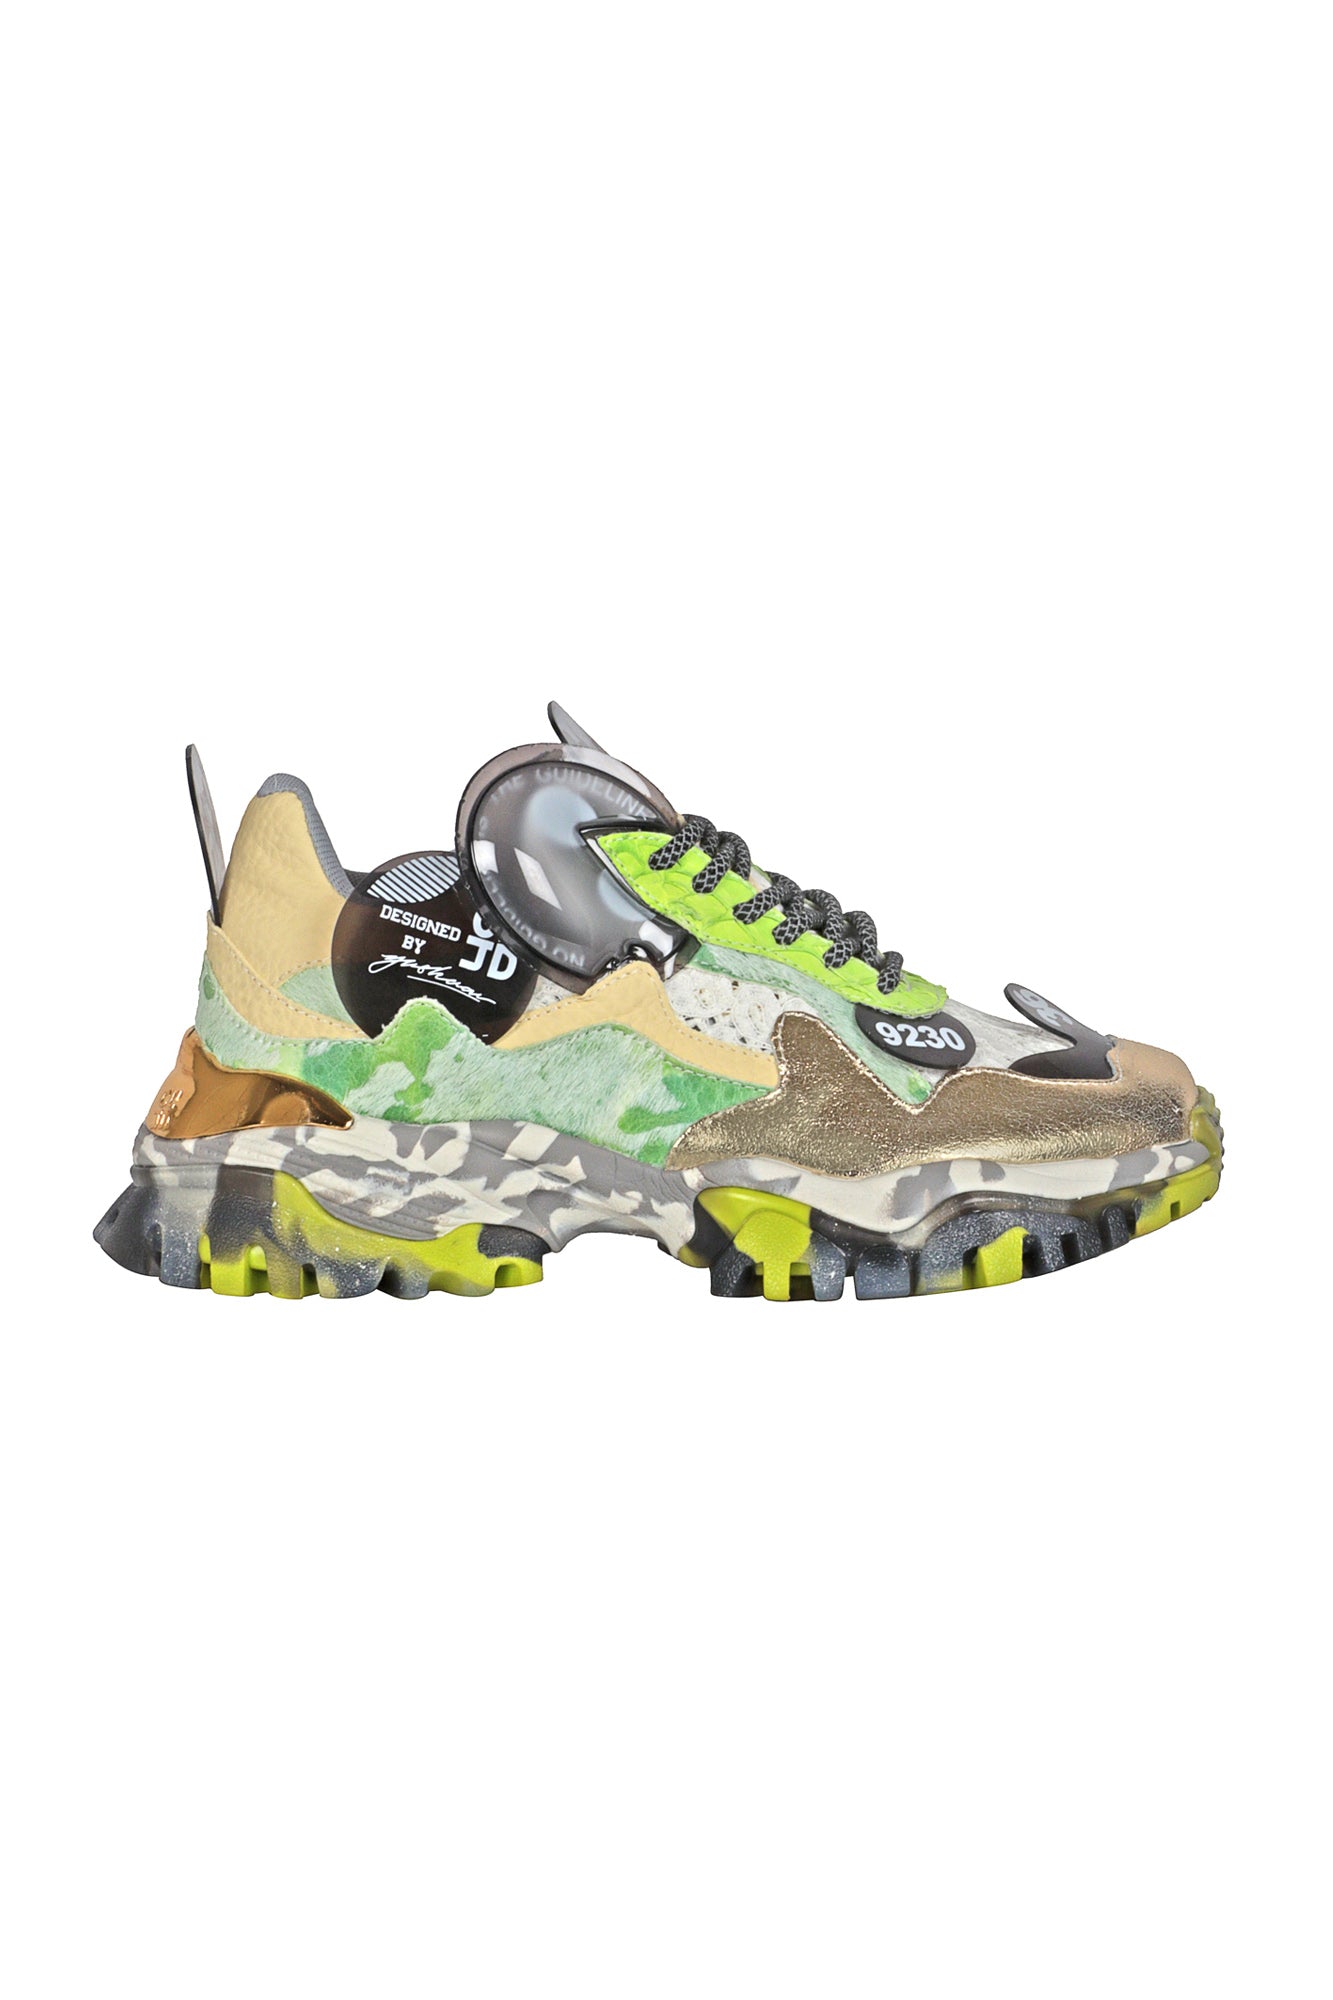 CLJD - Sneakers - 431268 - Verde/Oro